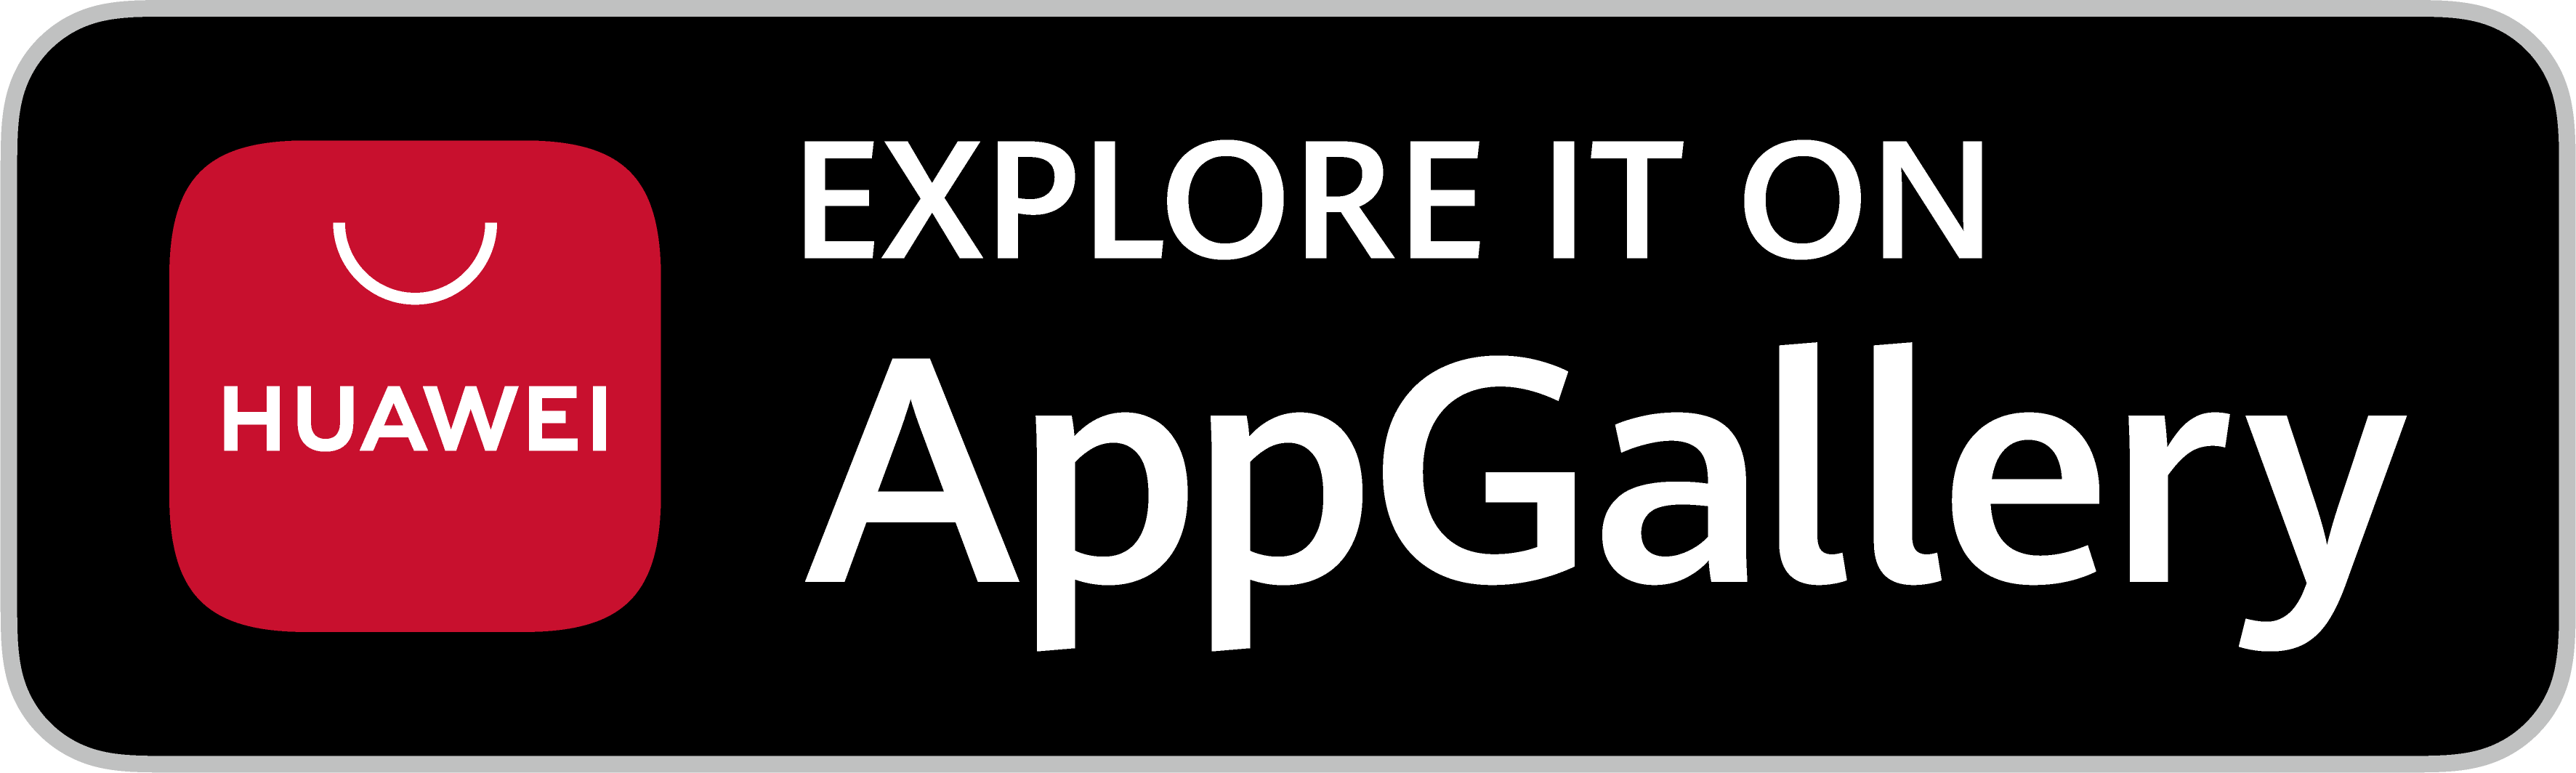 Laden Sie die Aquama-App aus der Huawei App Gallery herunter